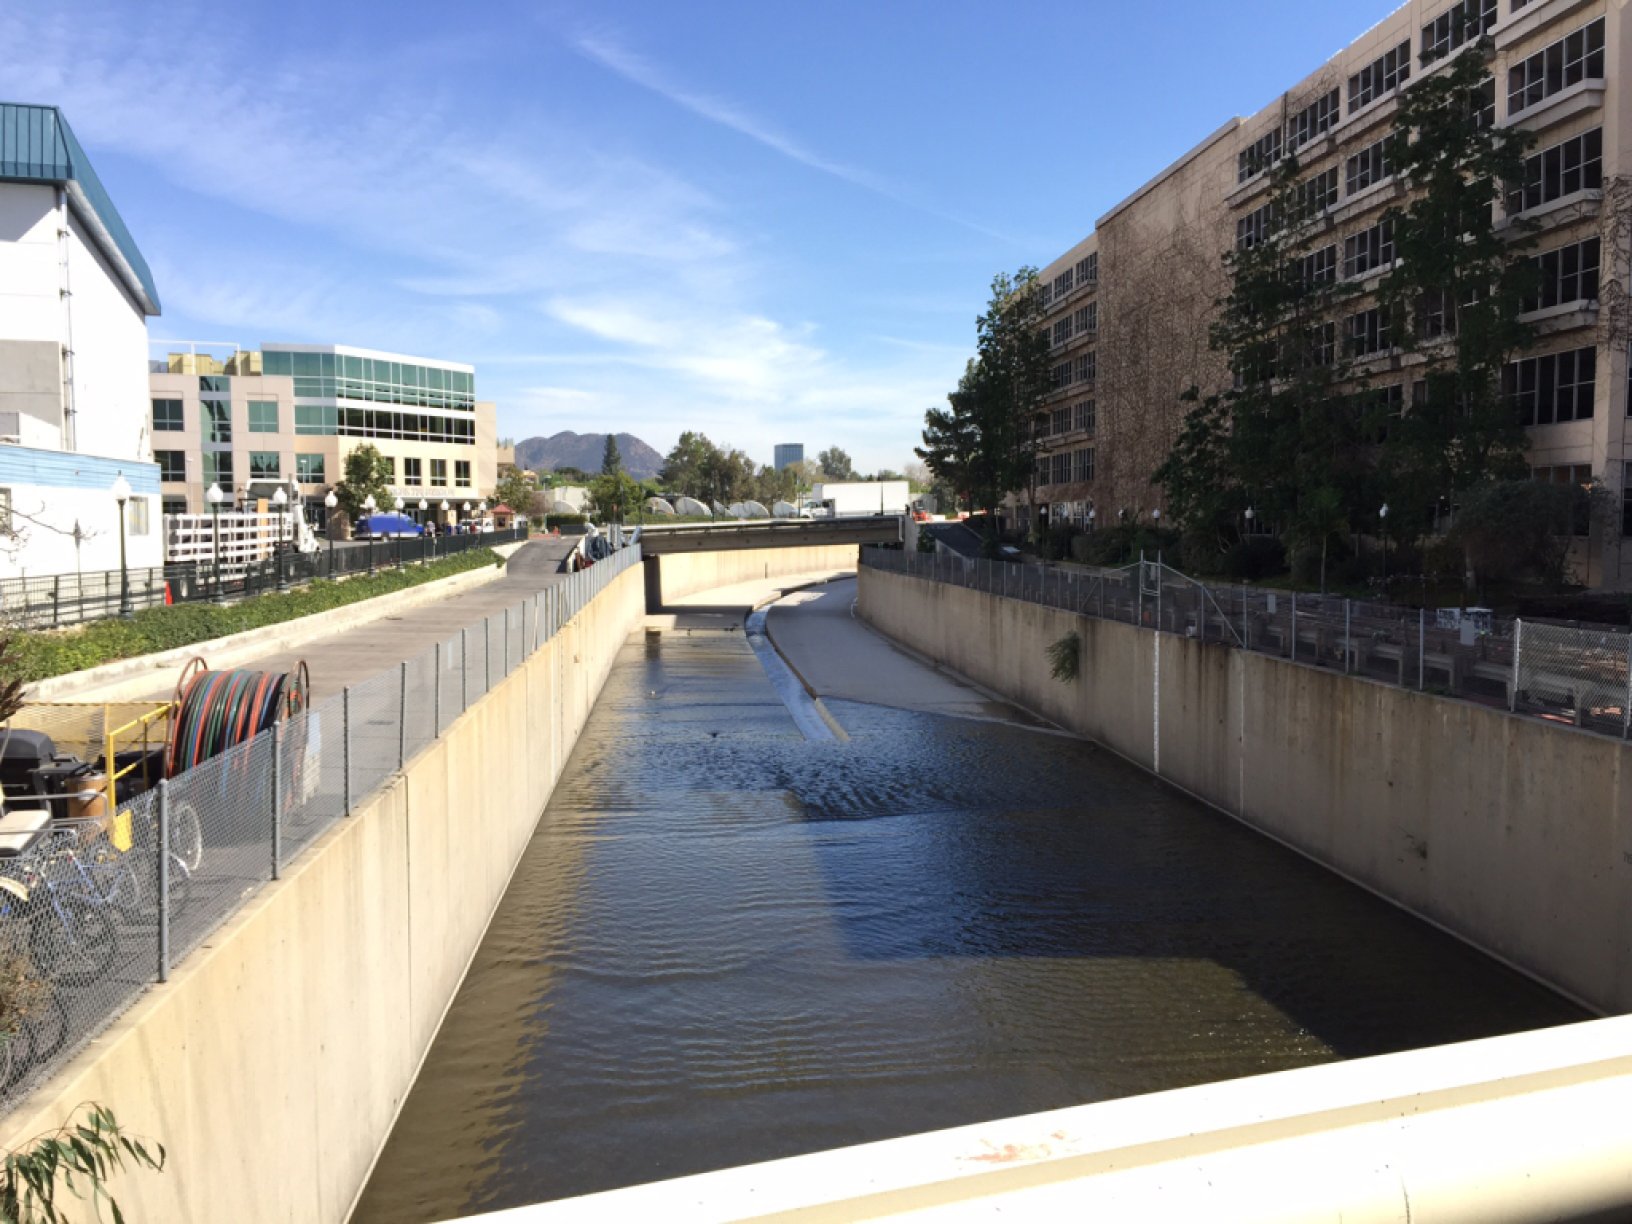 Una vista del río Los Ángeles en la actualidad. Las paredes ahora son perpendiculares, en lugar de inclinadas, y el canal ha sido modificado ligeramente. El río recibe el Tujunga Wash un poco más allá de la curva en la distancia.